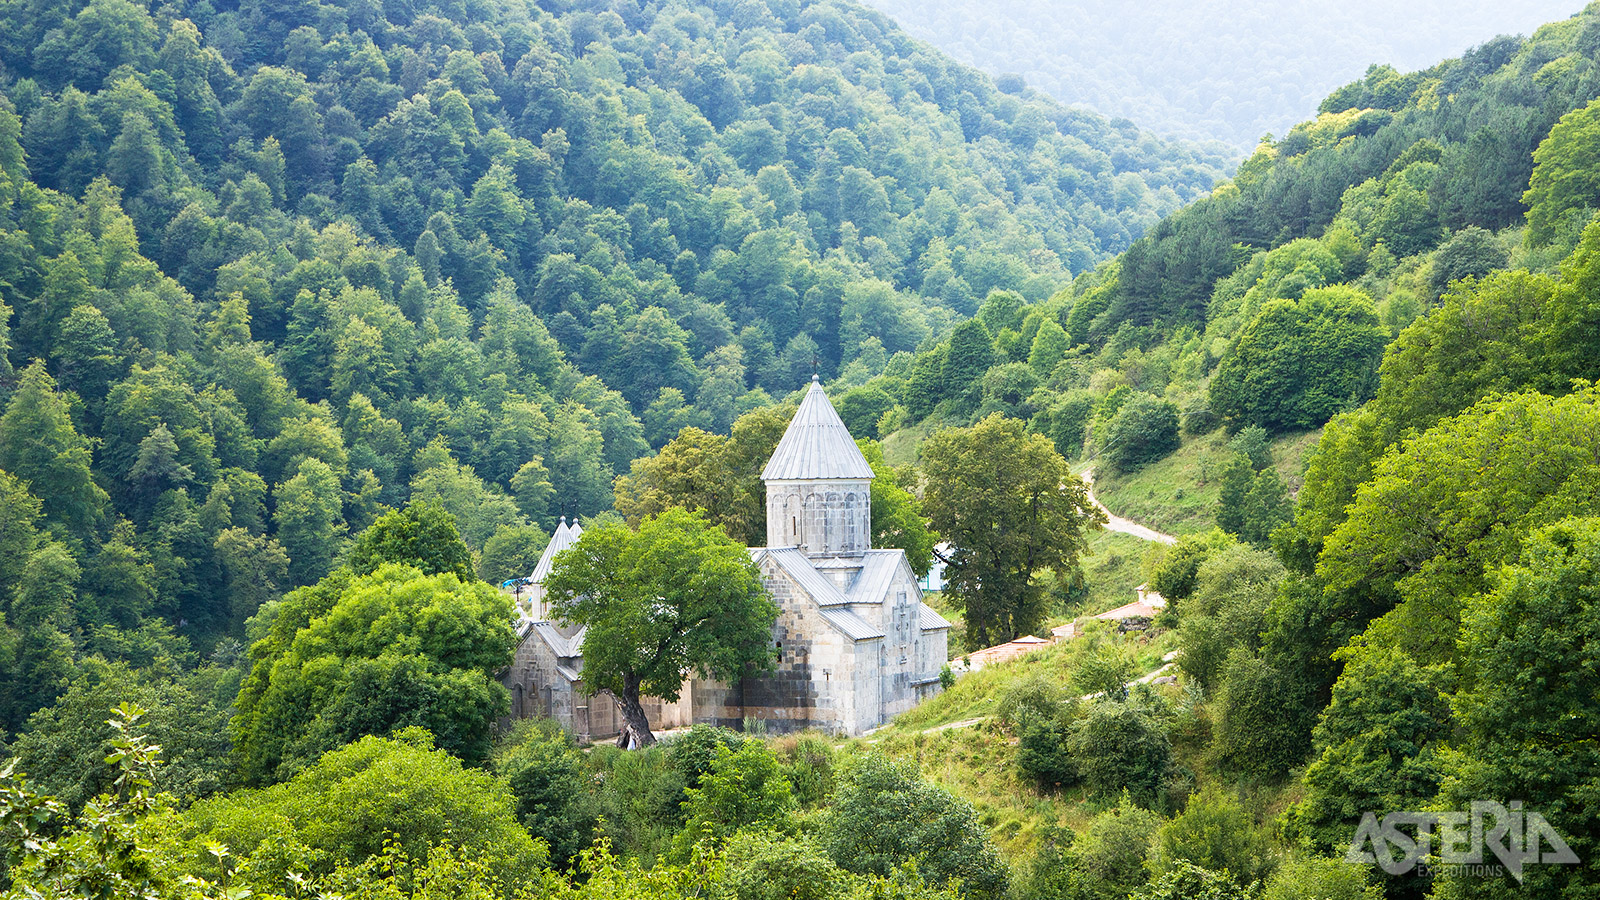 Diep verscholen in de bossen rond Dilijan ligt het klooster van Haghartsin, wat zoveel betekent als ’torenhoge adelaar’